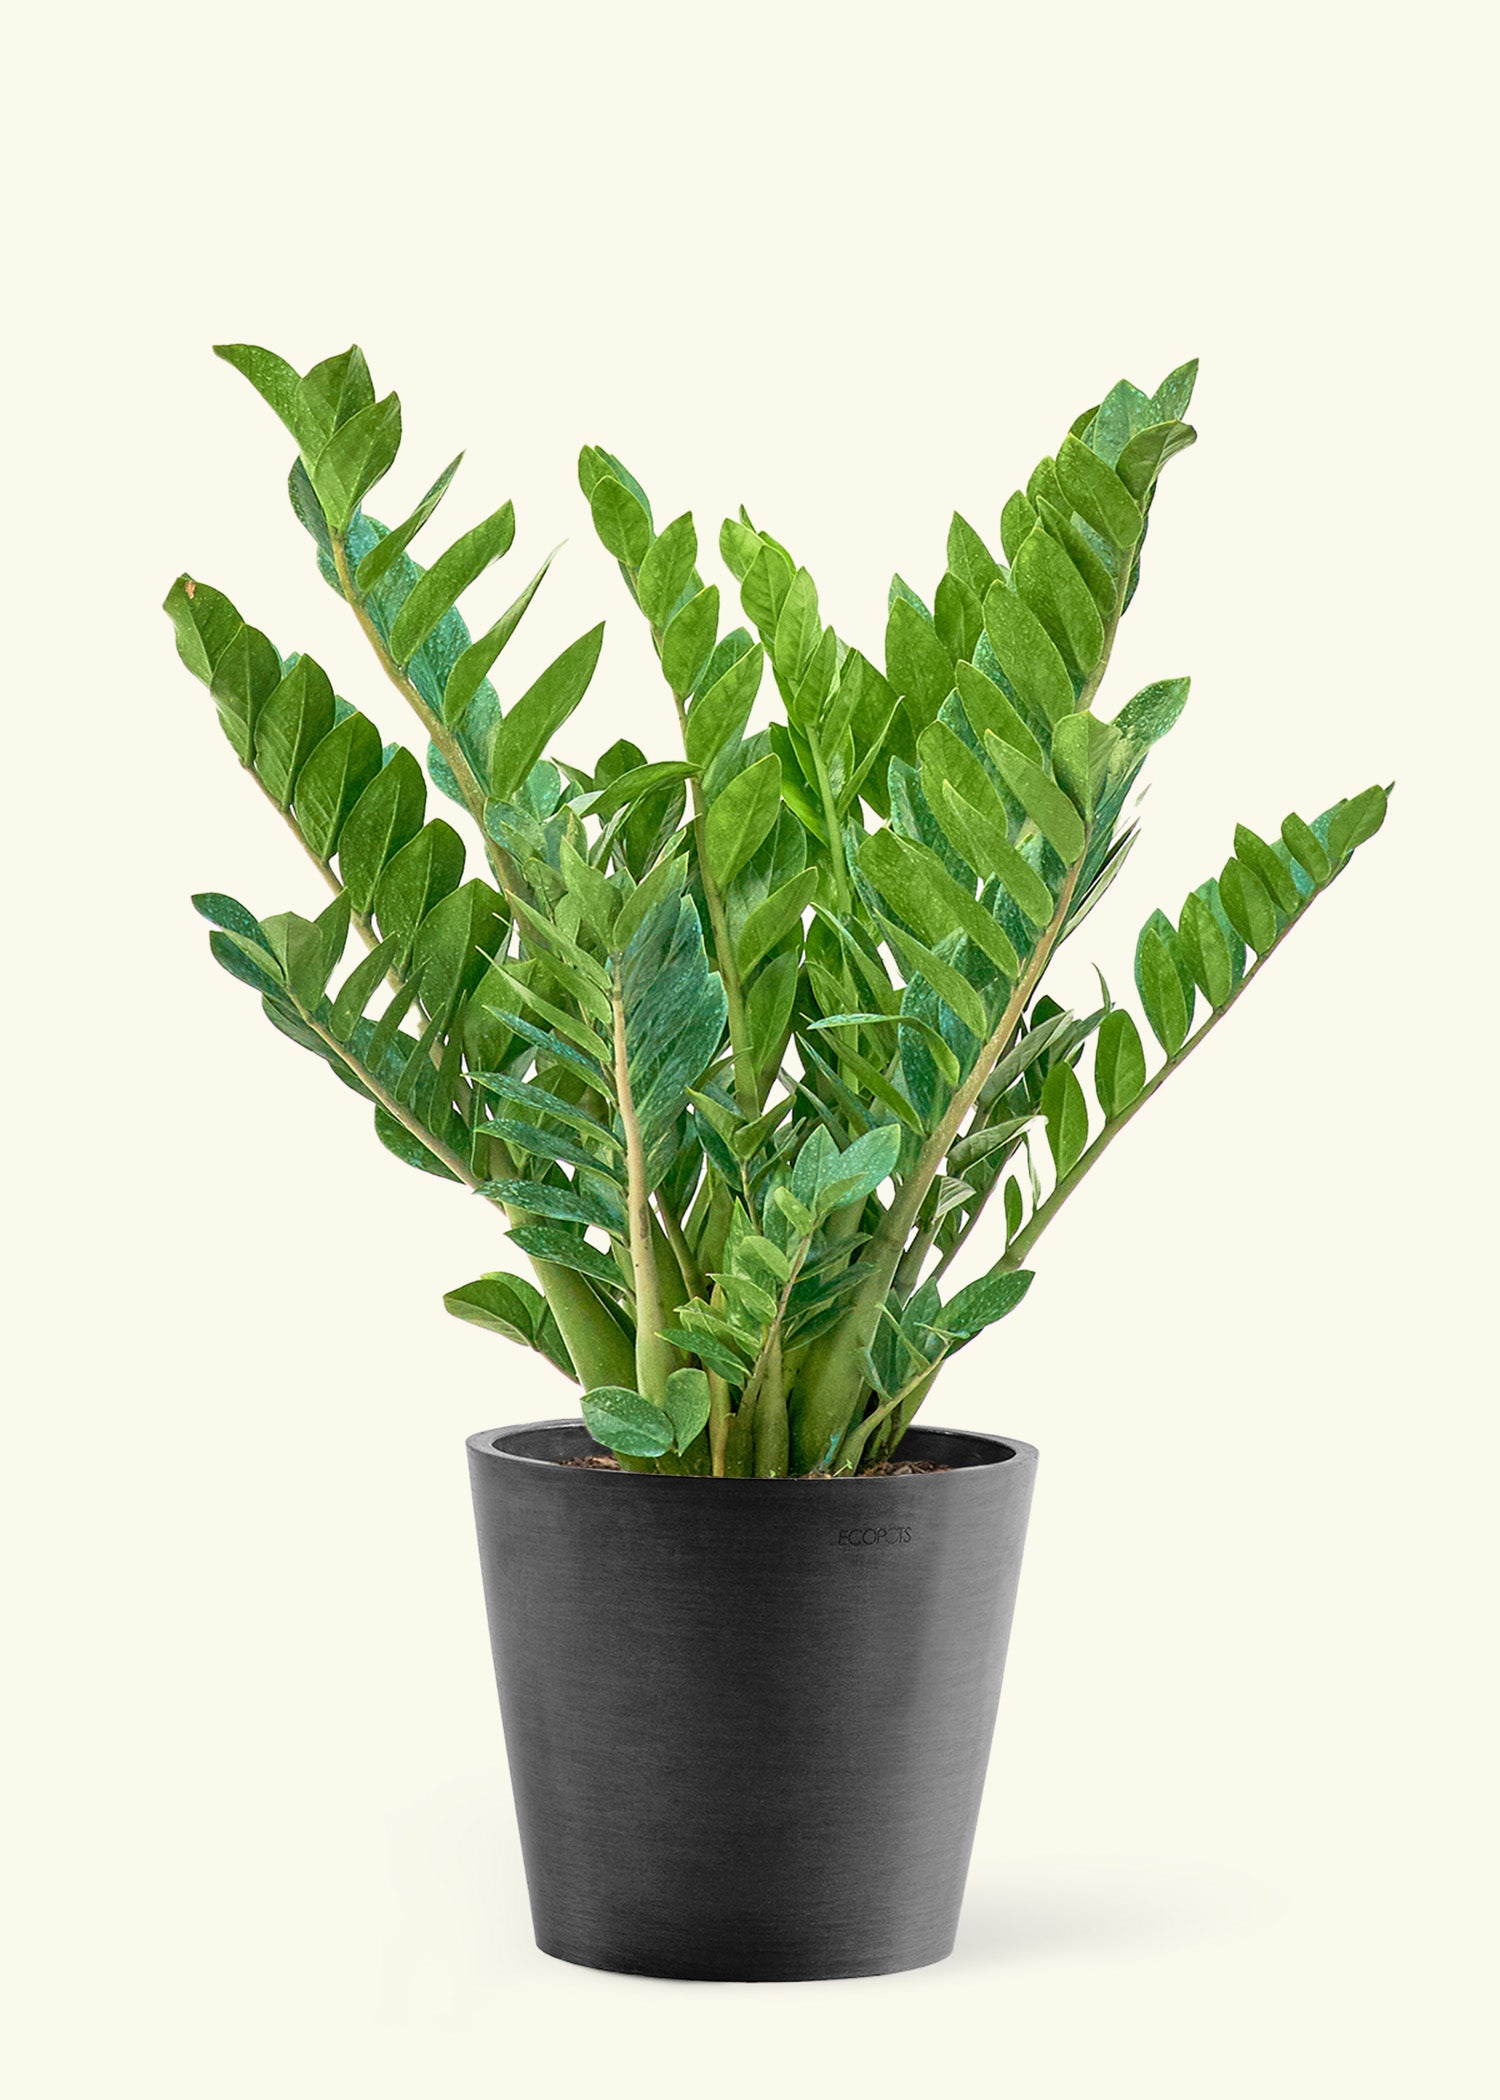 10" Large ZZ Plant (Zamioculcas zamiifolia) in a black pot.